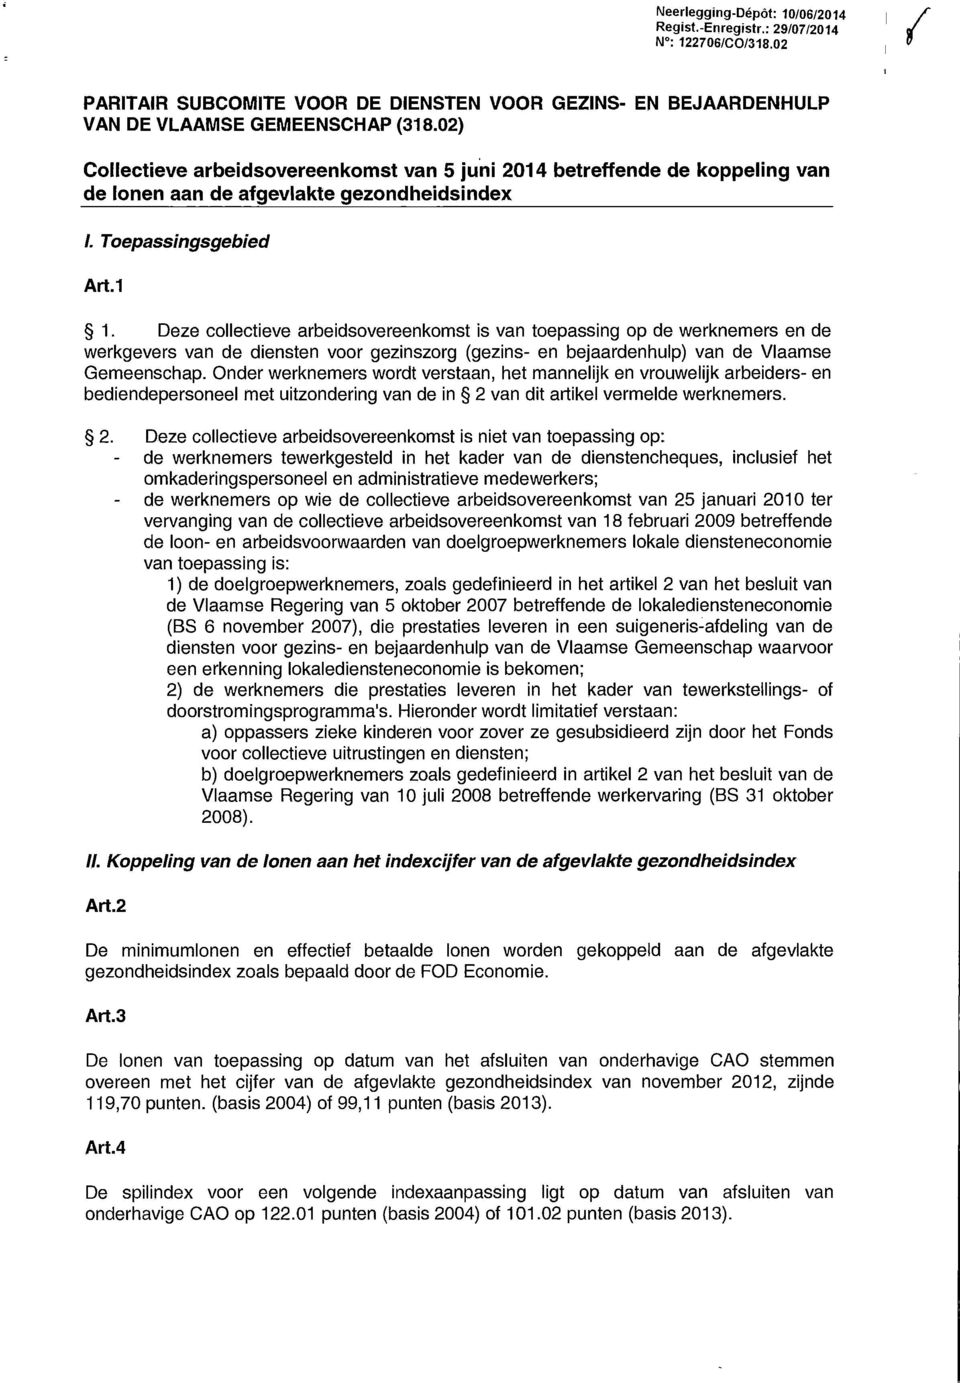 Deze collectieve arbeidsovereenkomst is van toepassing op de werknemers en de werkgevers van de diensten voor gezinszorg (gezins- en bejaardenhulp) van de Vlaamse Gemeenschap.